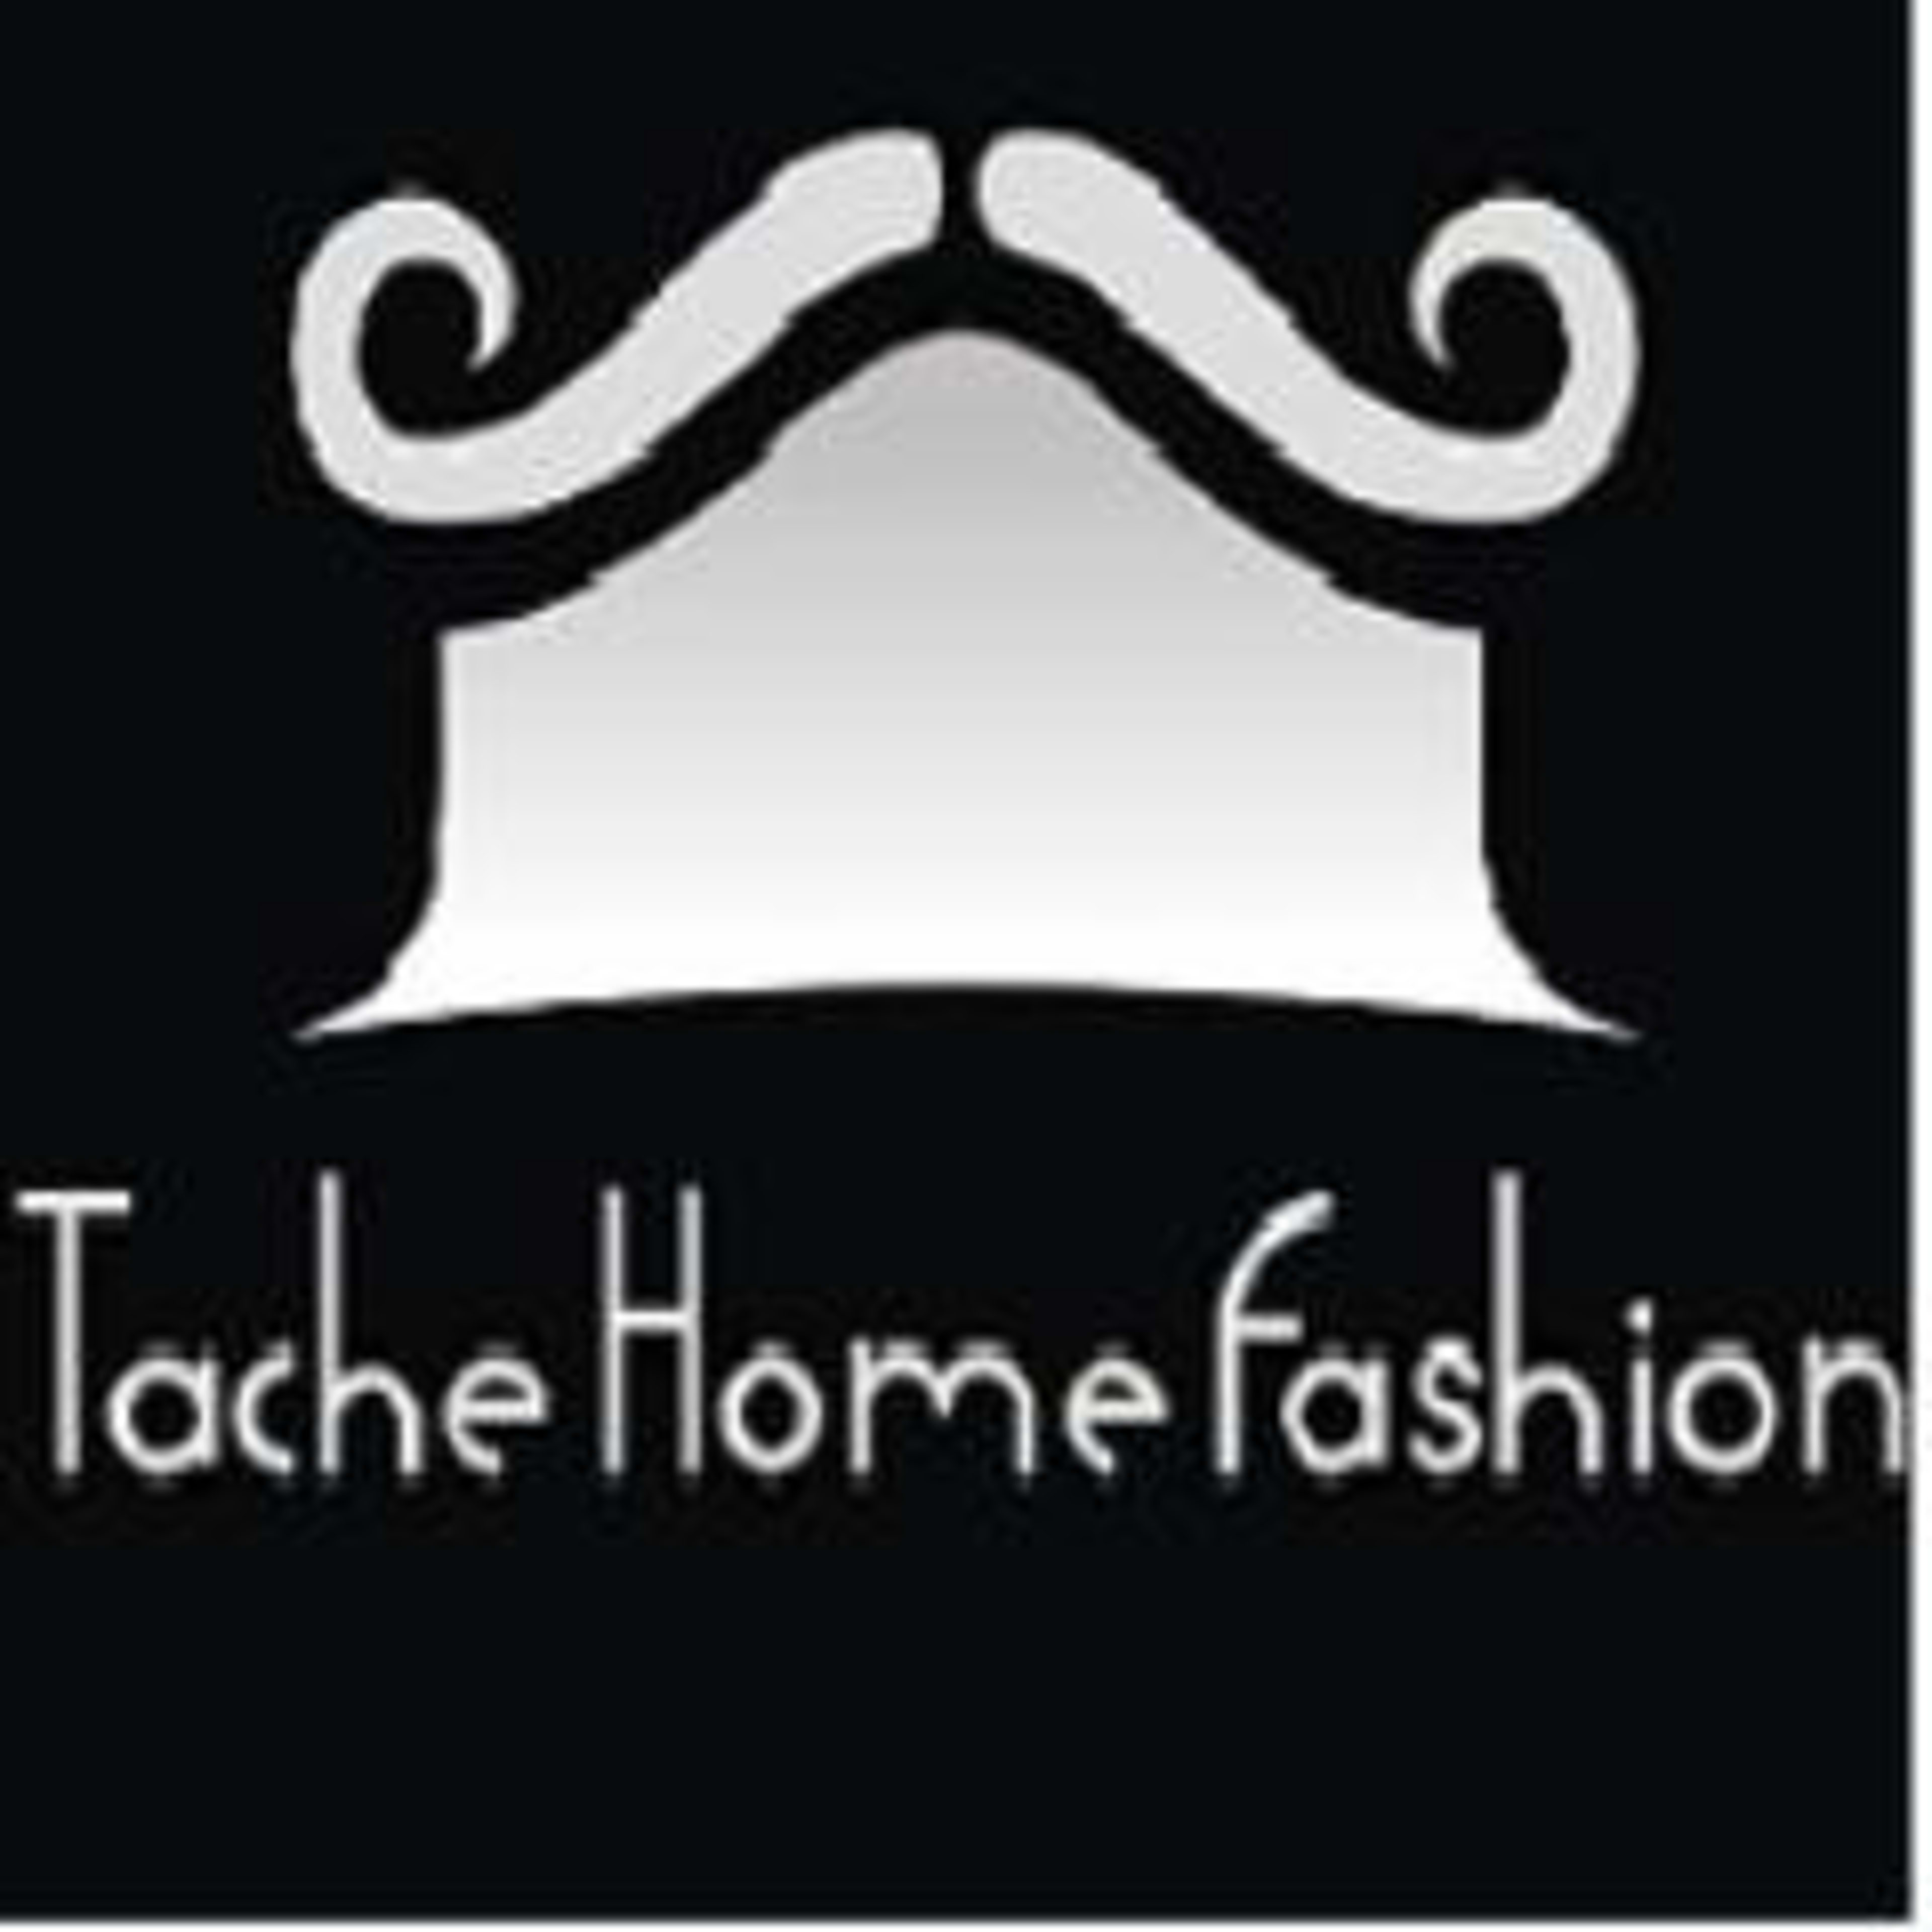 Tache Home FashionCode